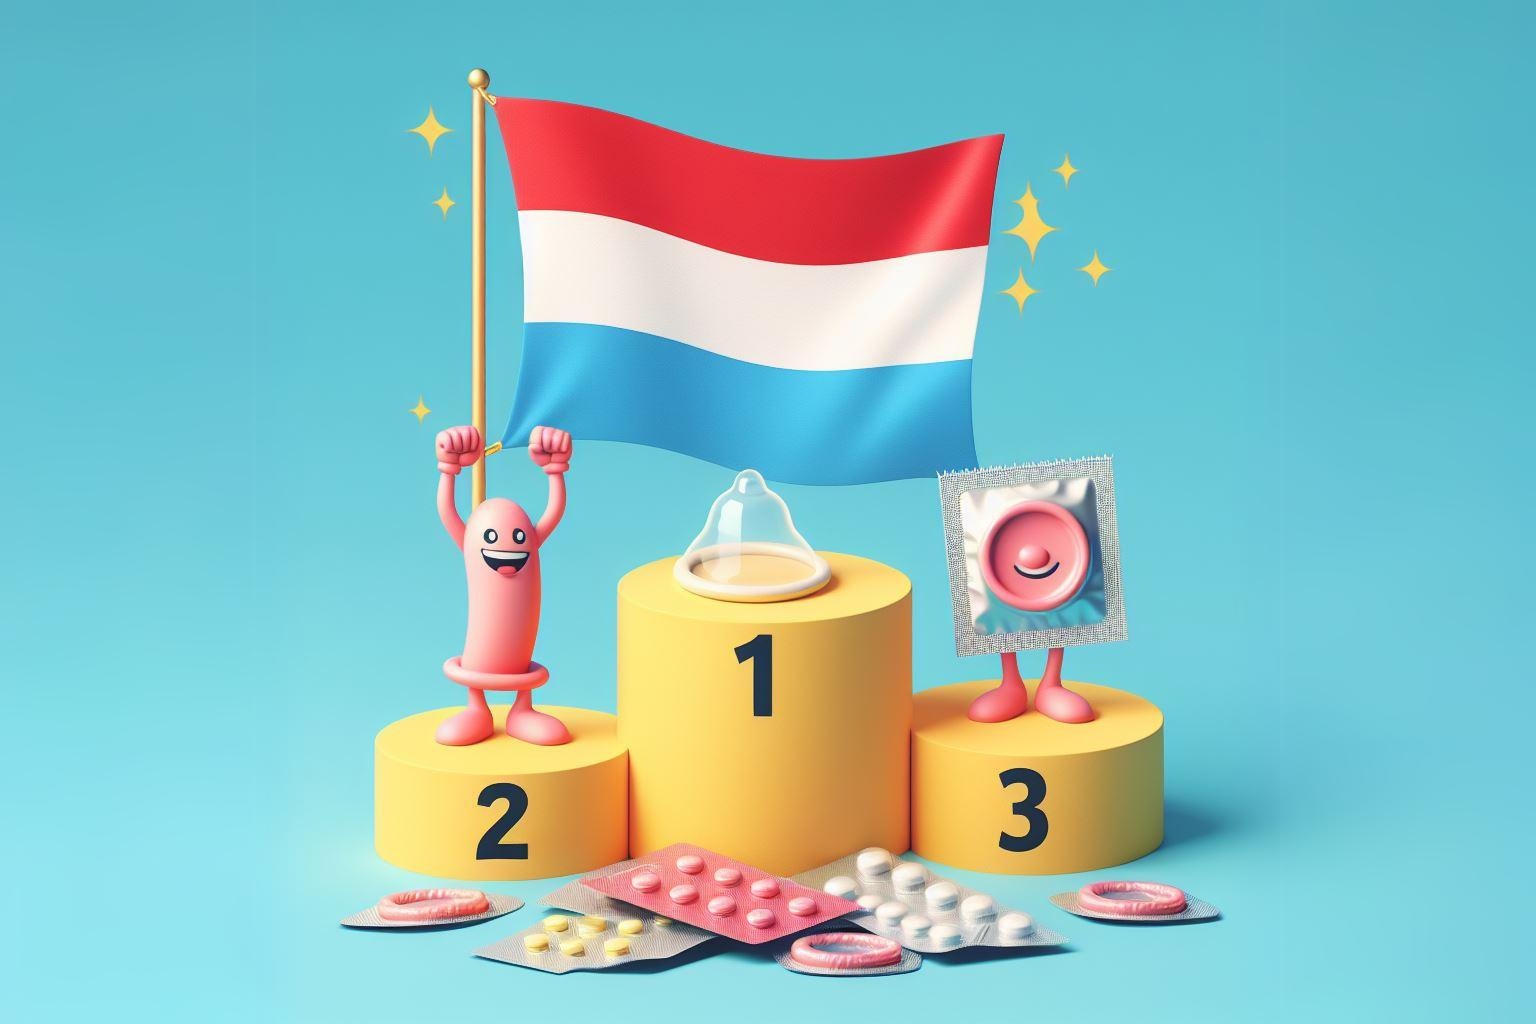 Flaga Luksemburga jako numer 1 na podium zwycięzców w temacie antykoncepcji